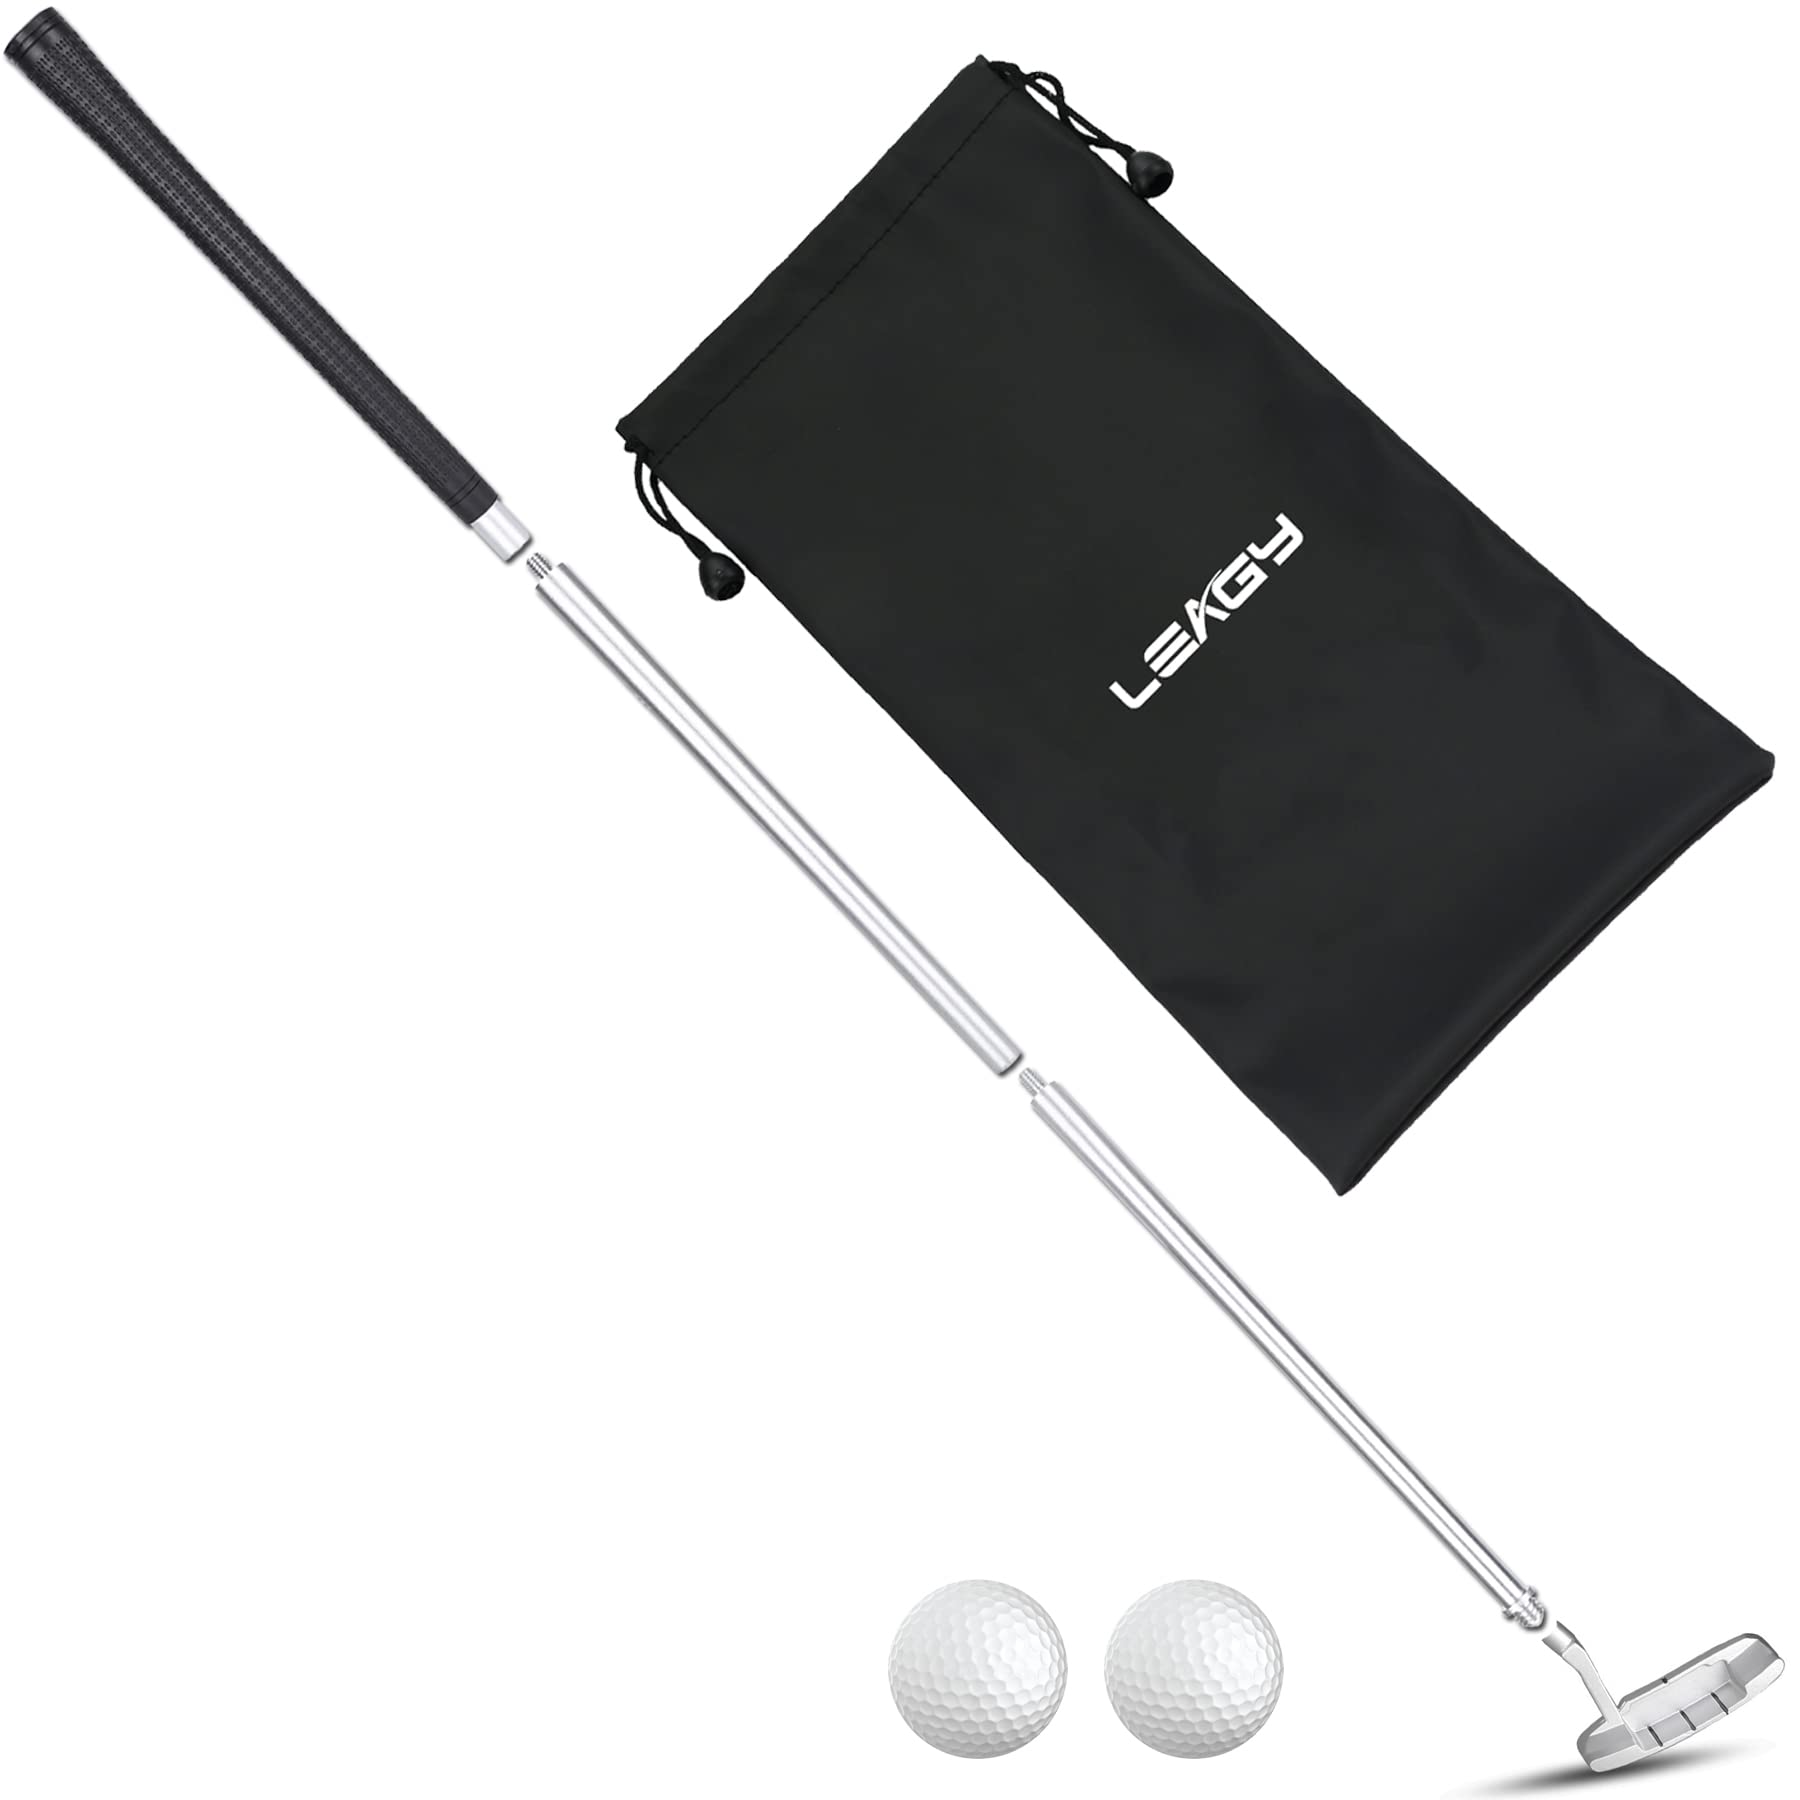 Golf Putter: Đây là một trong những vật dụng không thể thiếu đối với những người đam mê chơi golf. Một chiếc gậy golf với chất lượng tốt sẽ giúp bạn cải thiện tốc độ và độ chính xác trong lúc chơi. Hãy cùng chiêm ngưỡng hình ảnh của một chiếc golf putter để khám phá những tính năng và công dụng của nó.